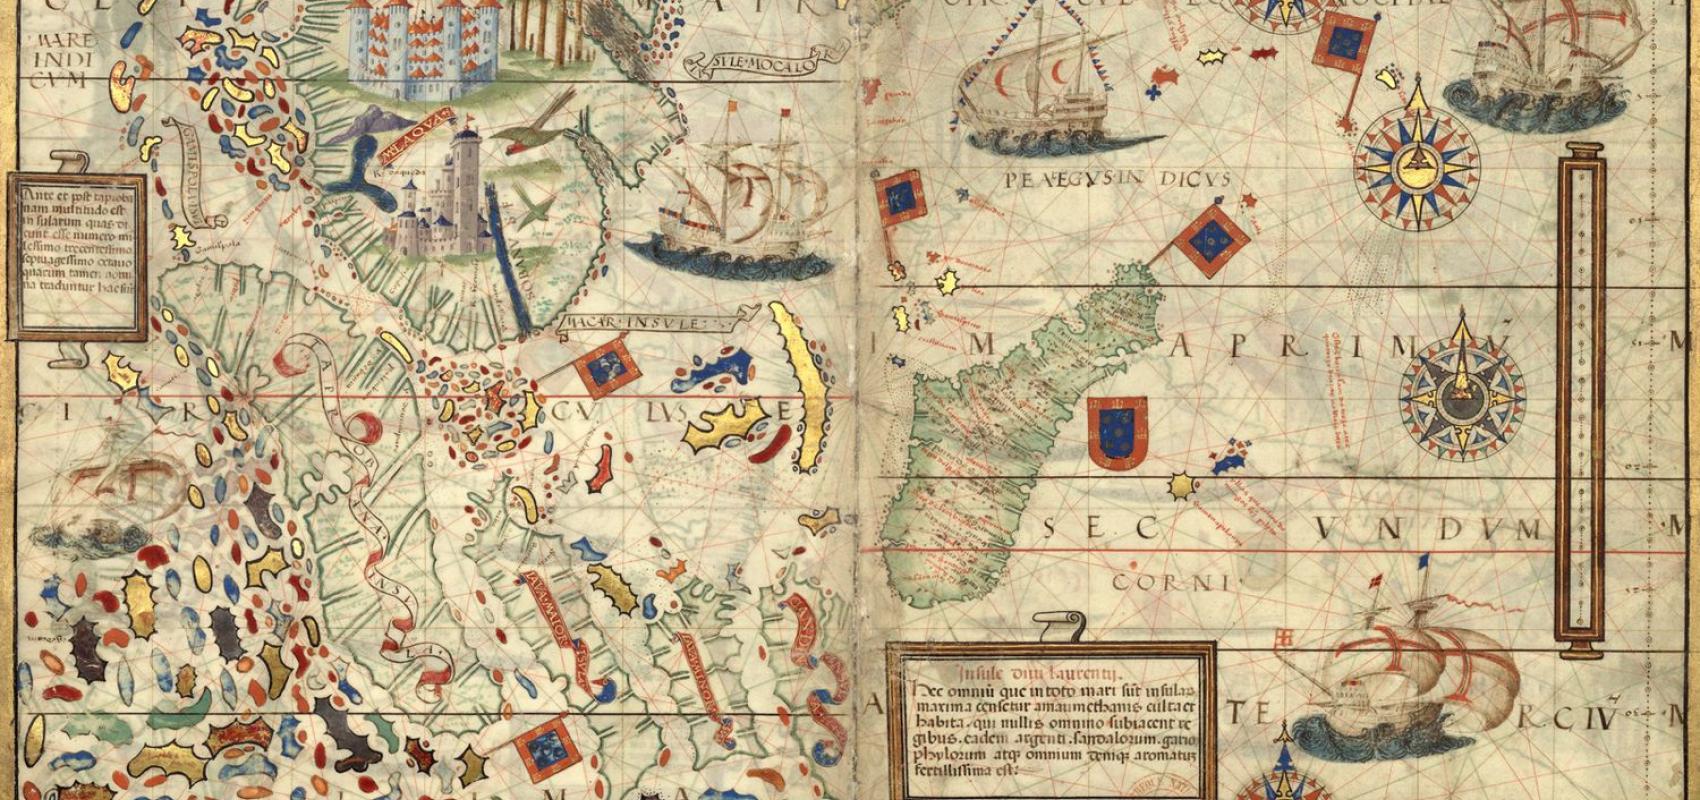 Atlas nautique du Monde, dit atlas Miller – Océan Indien, Insulinde et Madagascar - 1519 - BnF, département des Cartes et plans